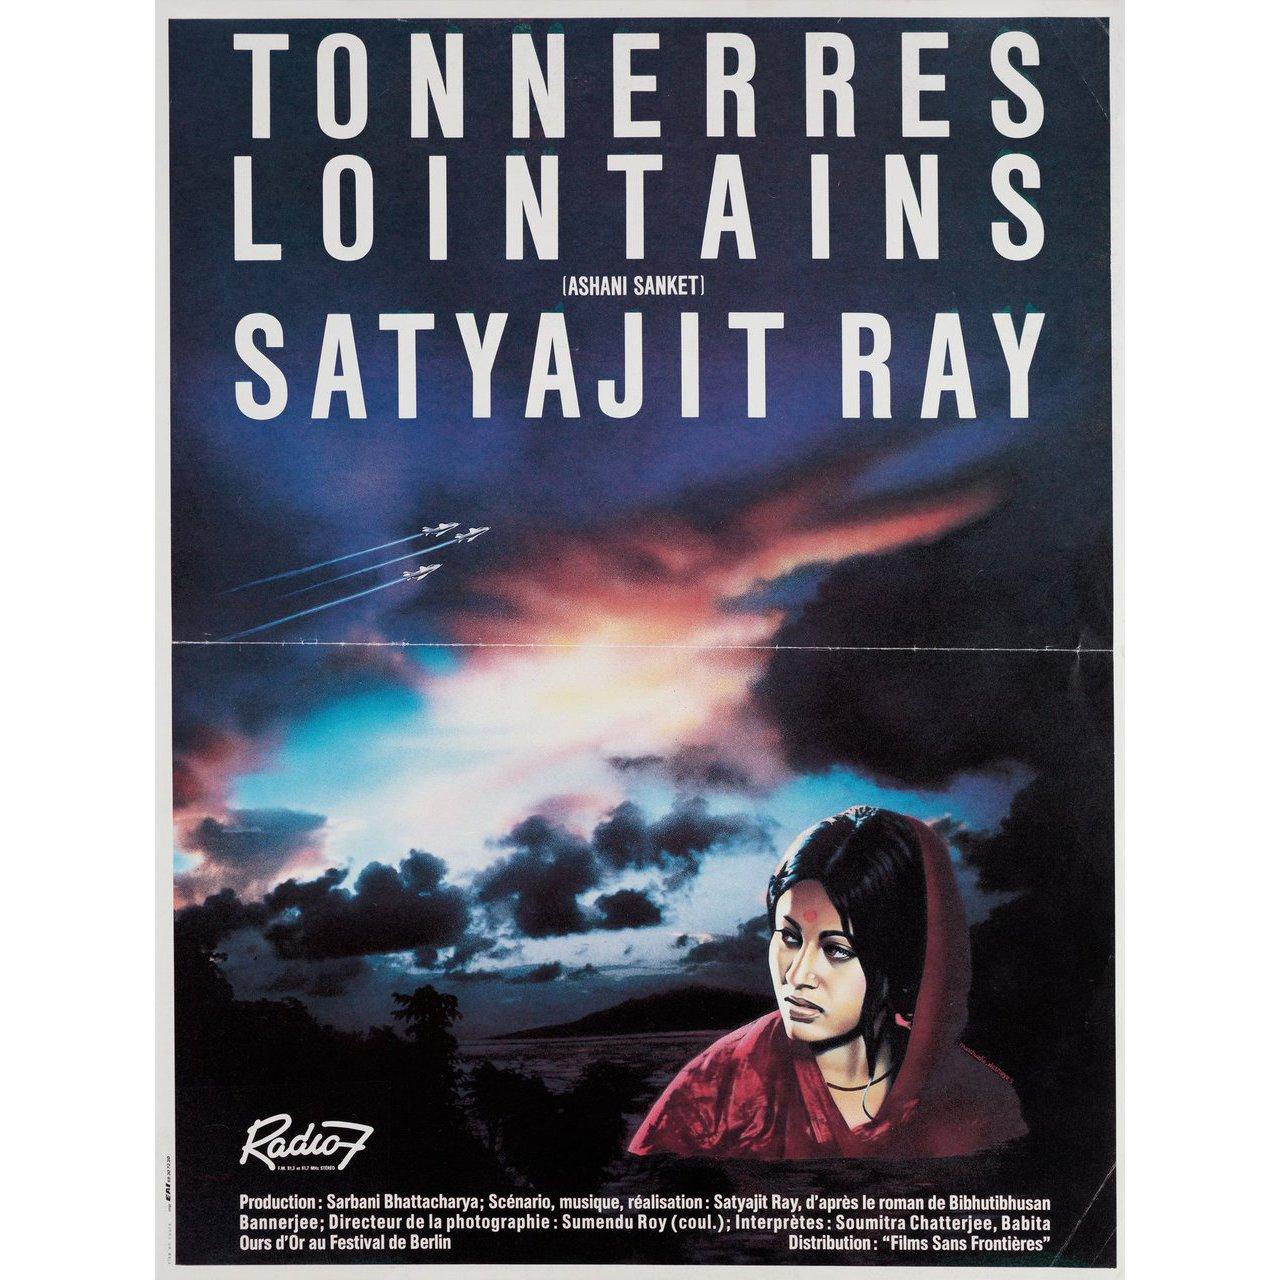 Petite affiche française originale de 1985 pour la première sortie en salles en France du film Tonnerre lointain (Ashani Sanket) de 1973 réalisé par Satyajit Ray avec Soumitra Chatterjee / Babita Kapoor / Sandhya Roy / Chitra Banerjee. Très bon